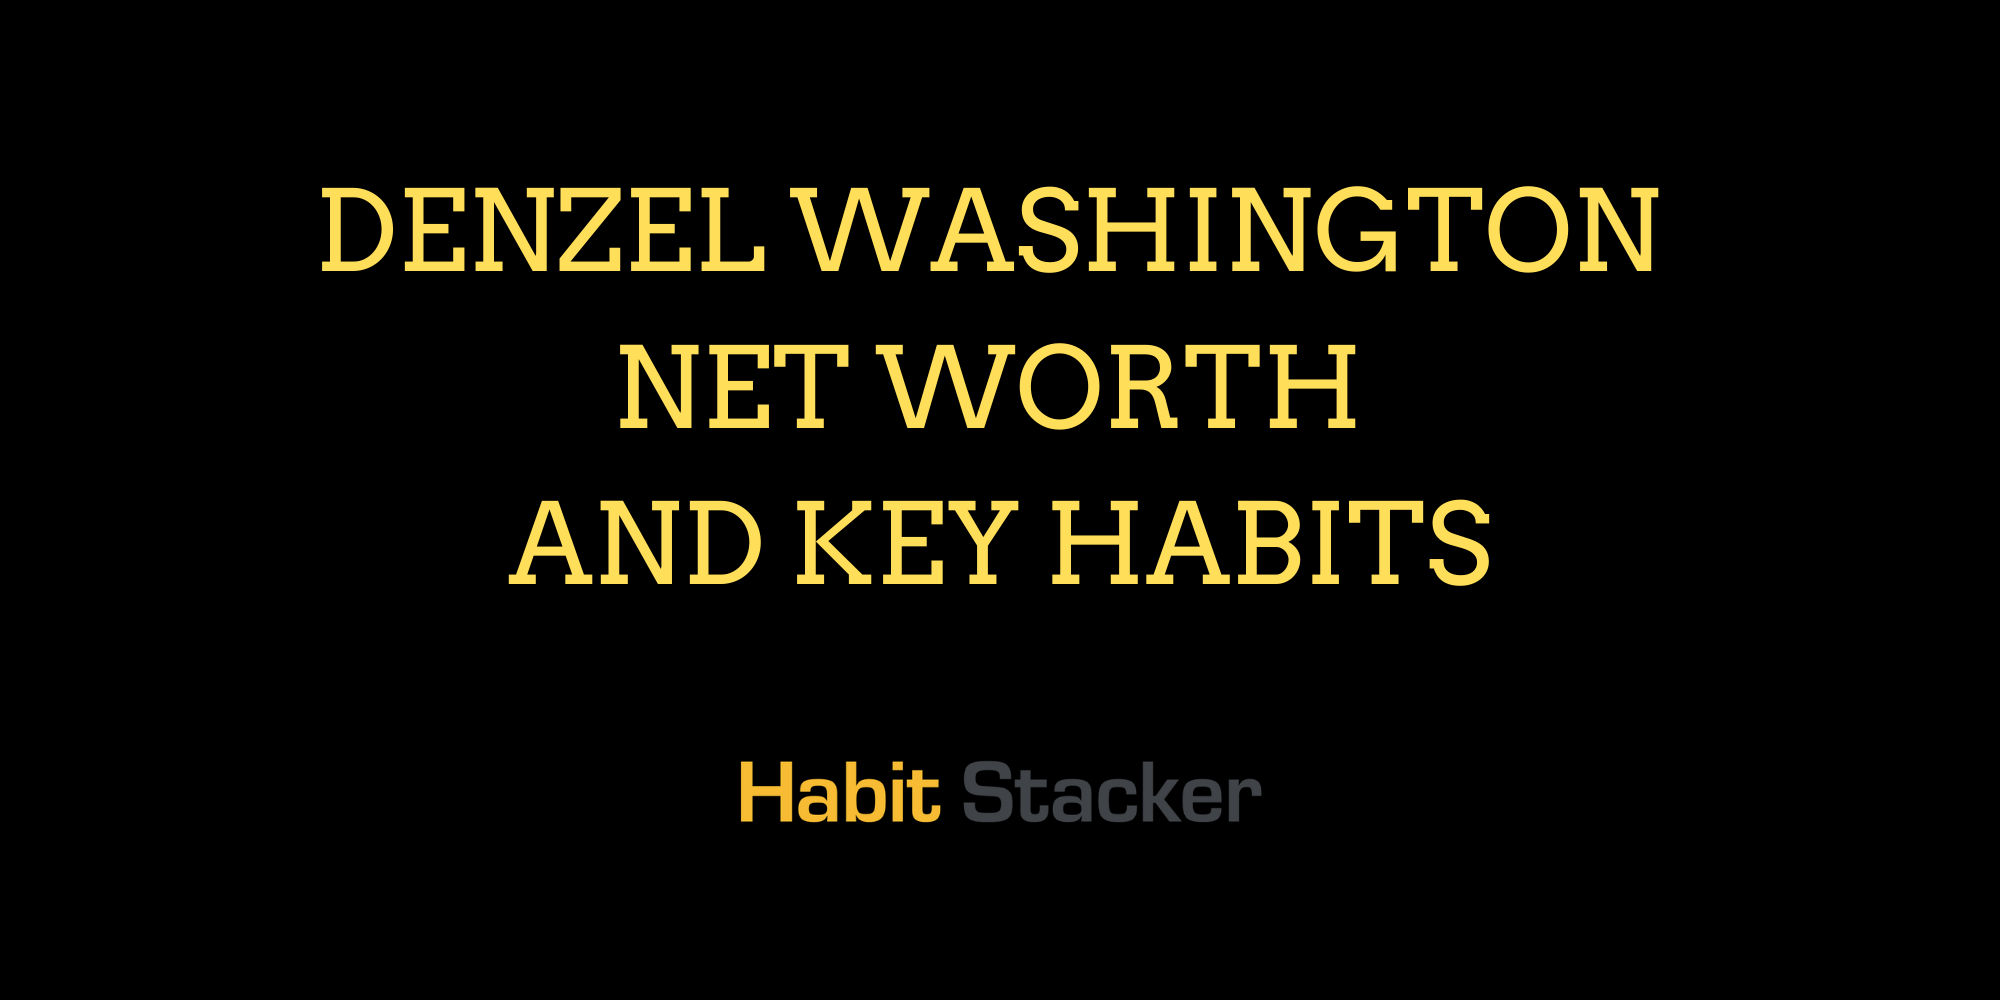 Denzel Washington Net Worth and Key Habits